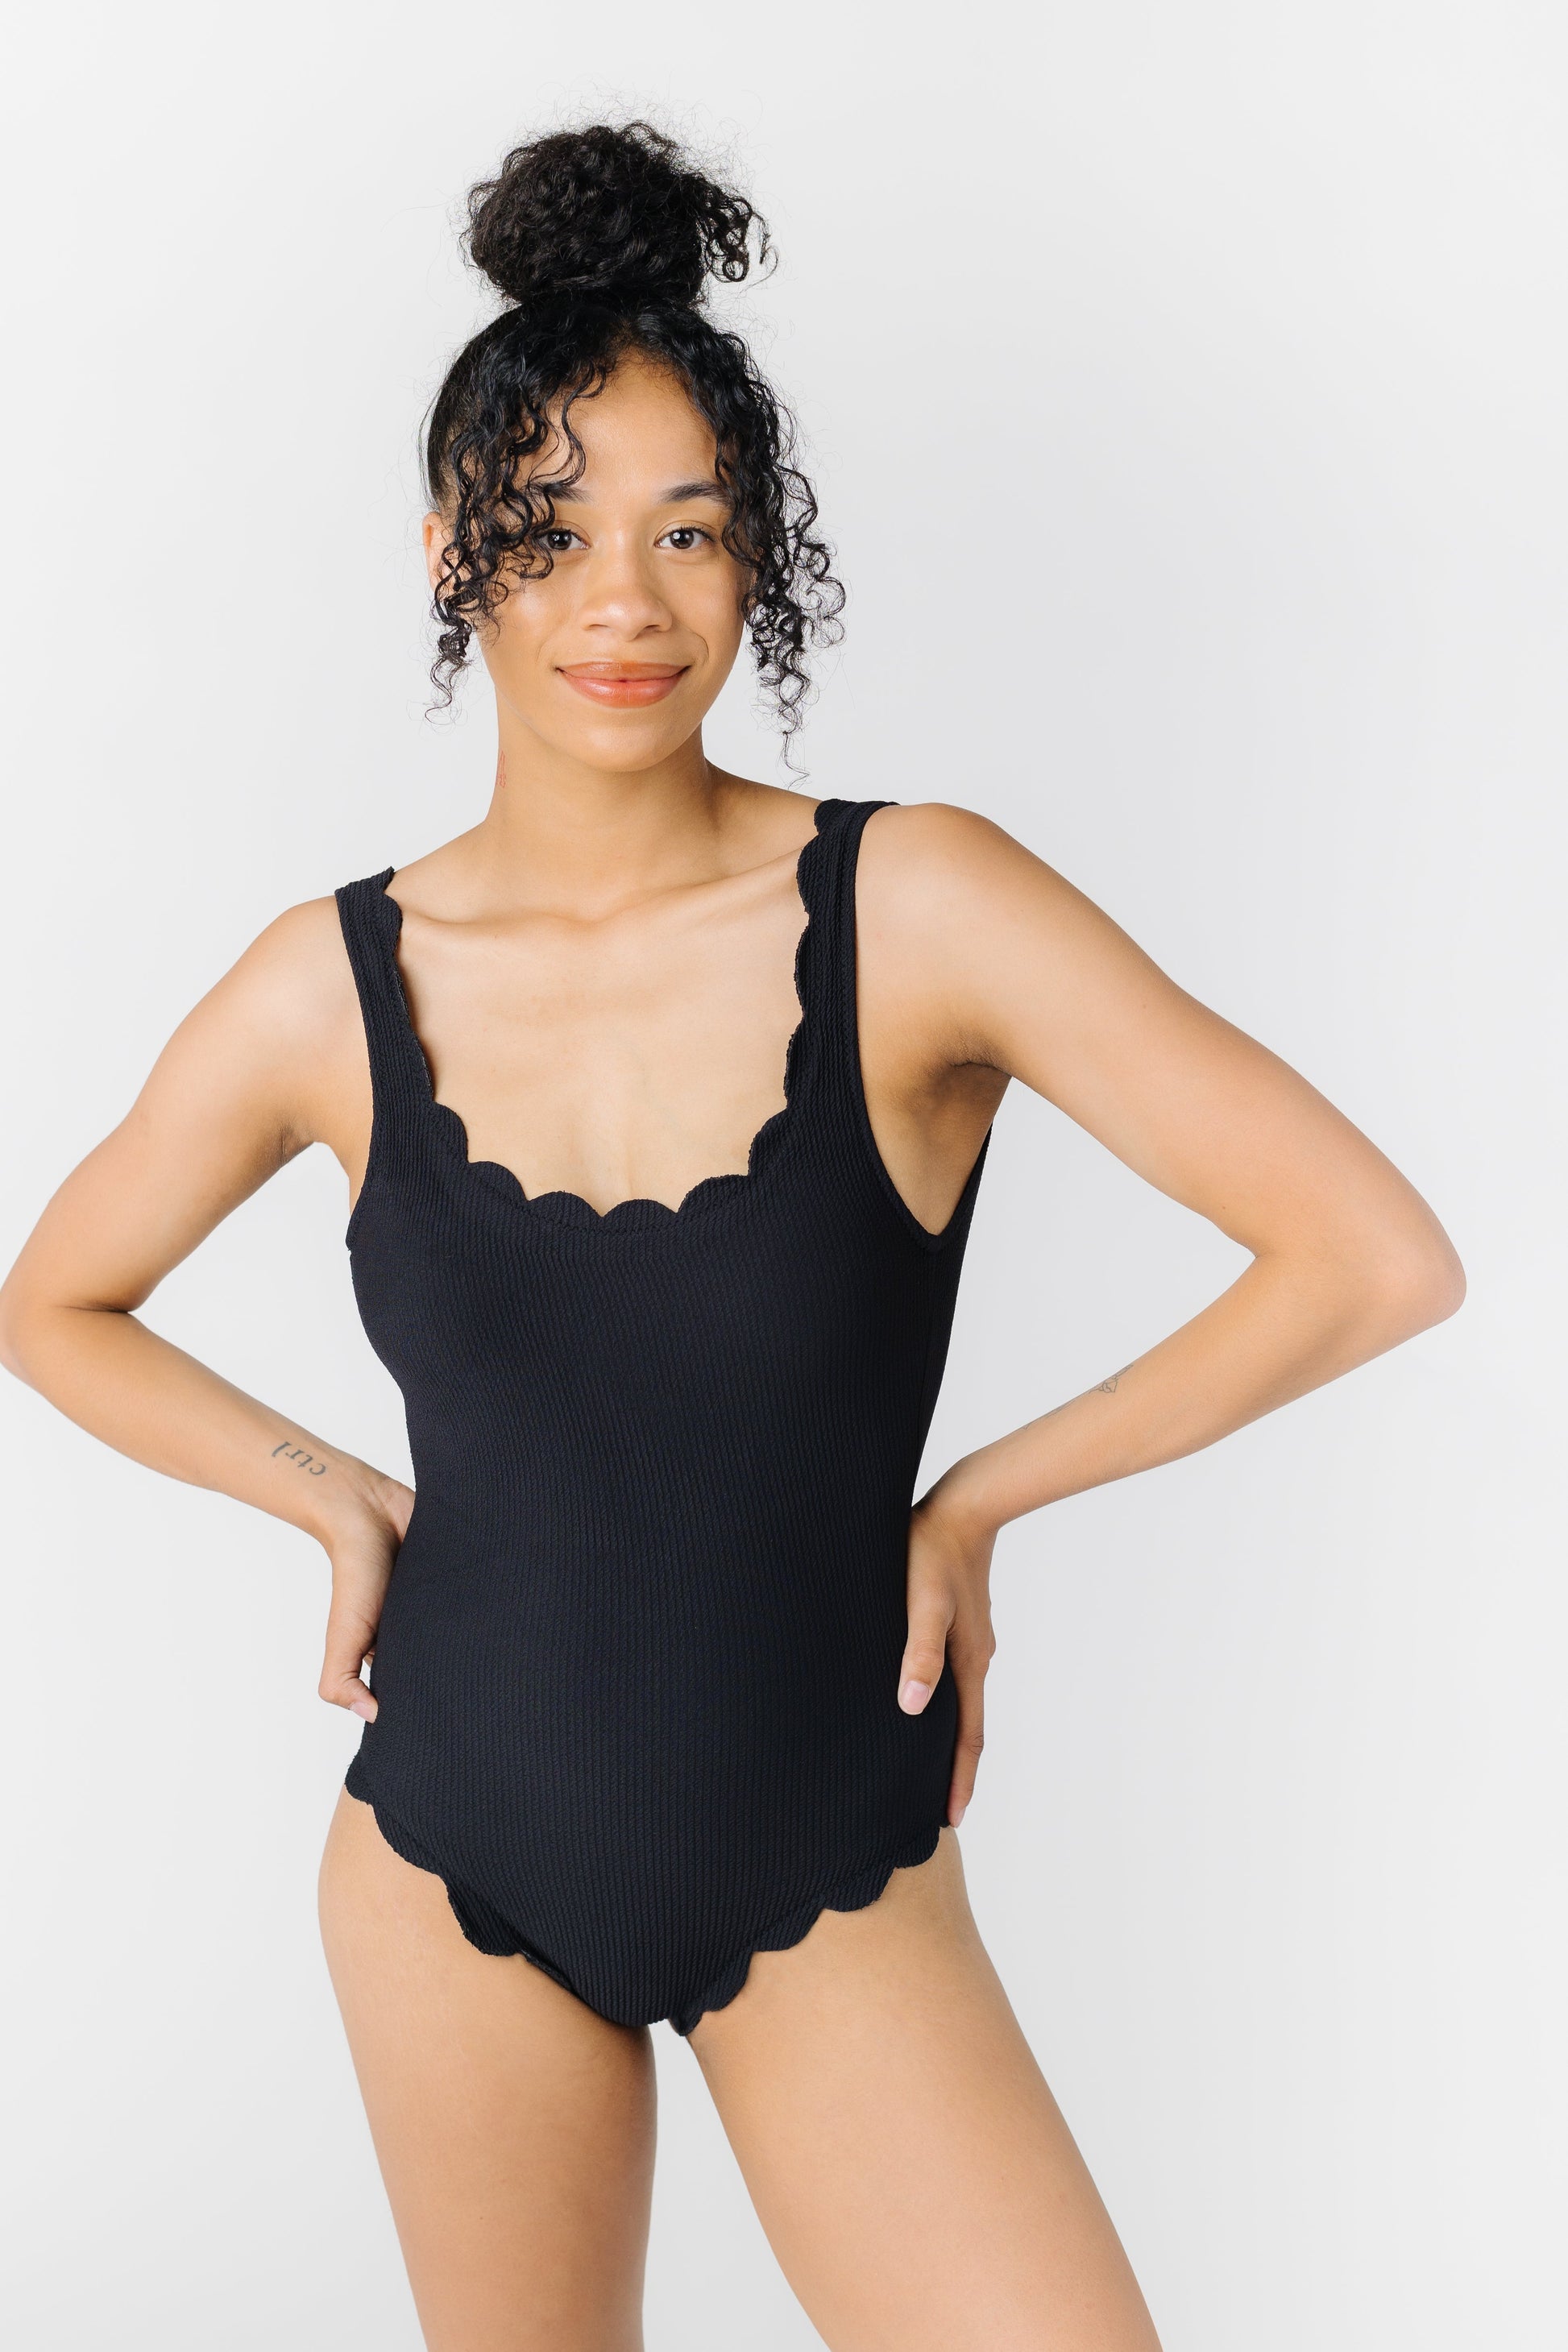 Textured Scallop One Piece Swimsuit WOMEN'S SWIM ONEPIECE BEACH JOY BIKINI 